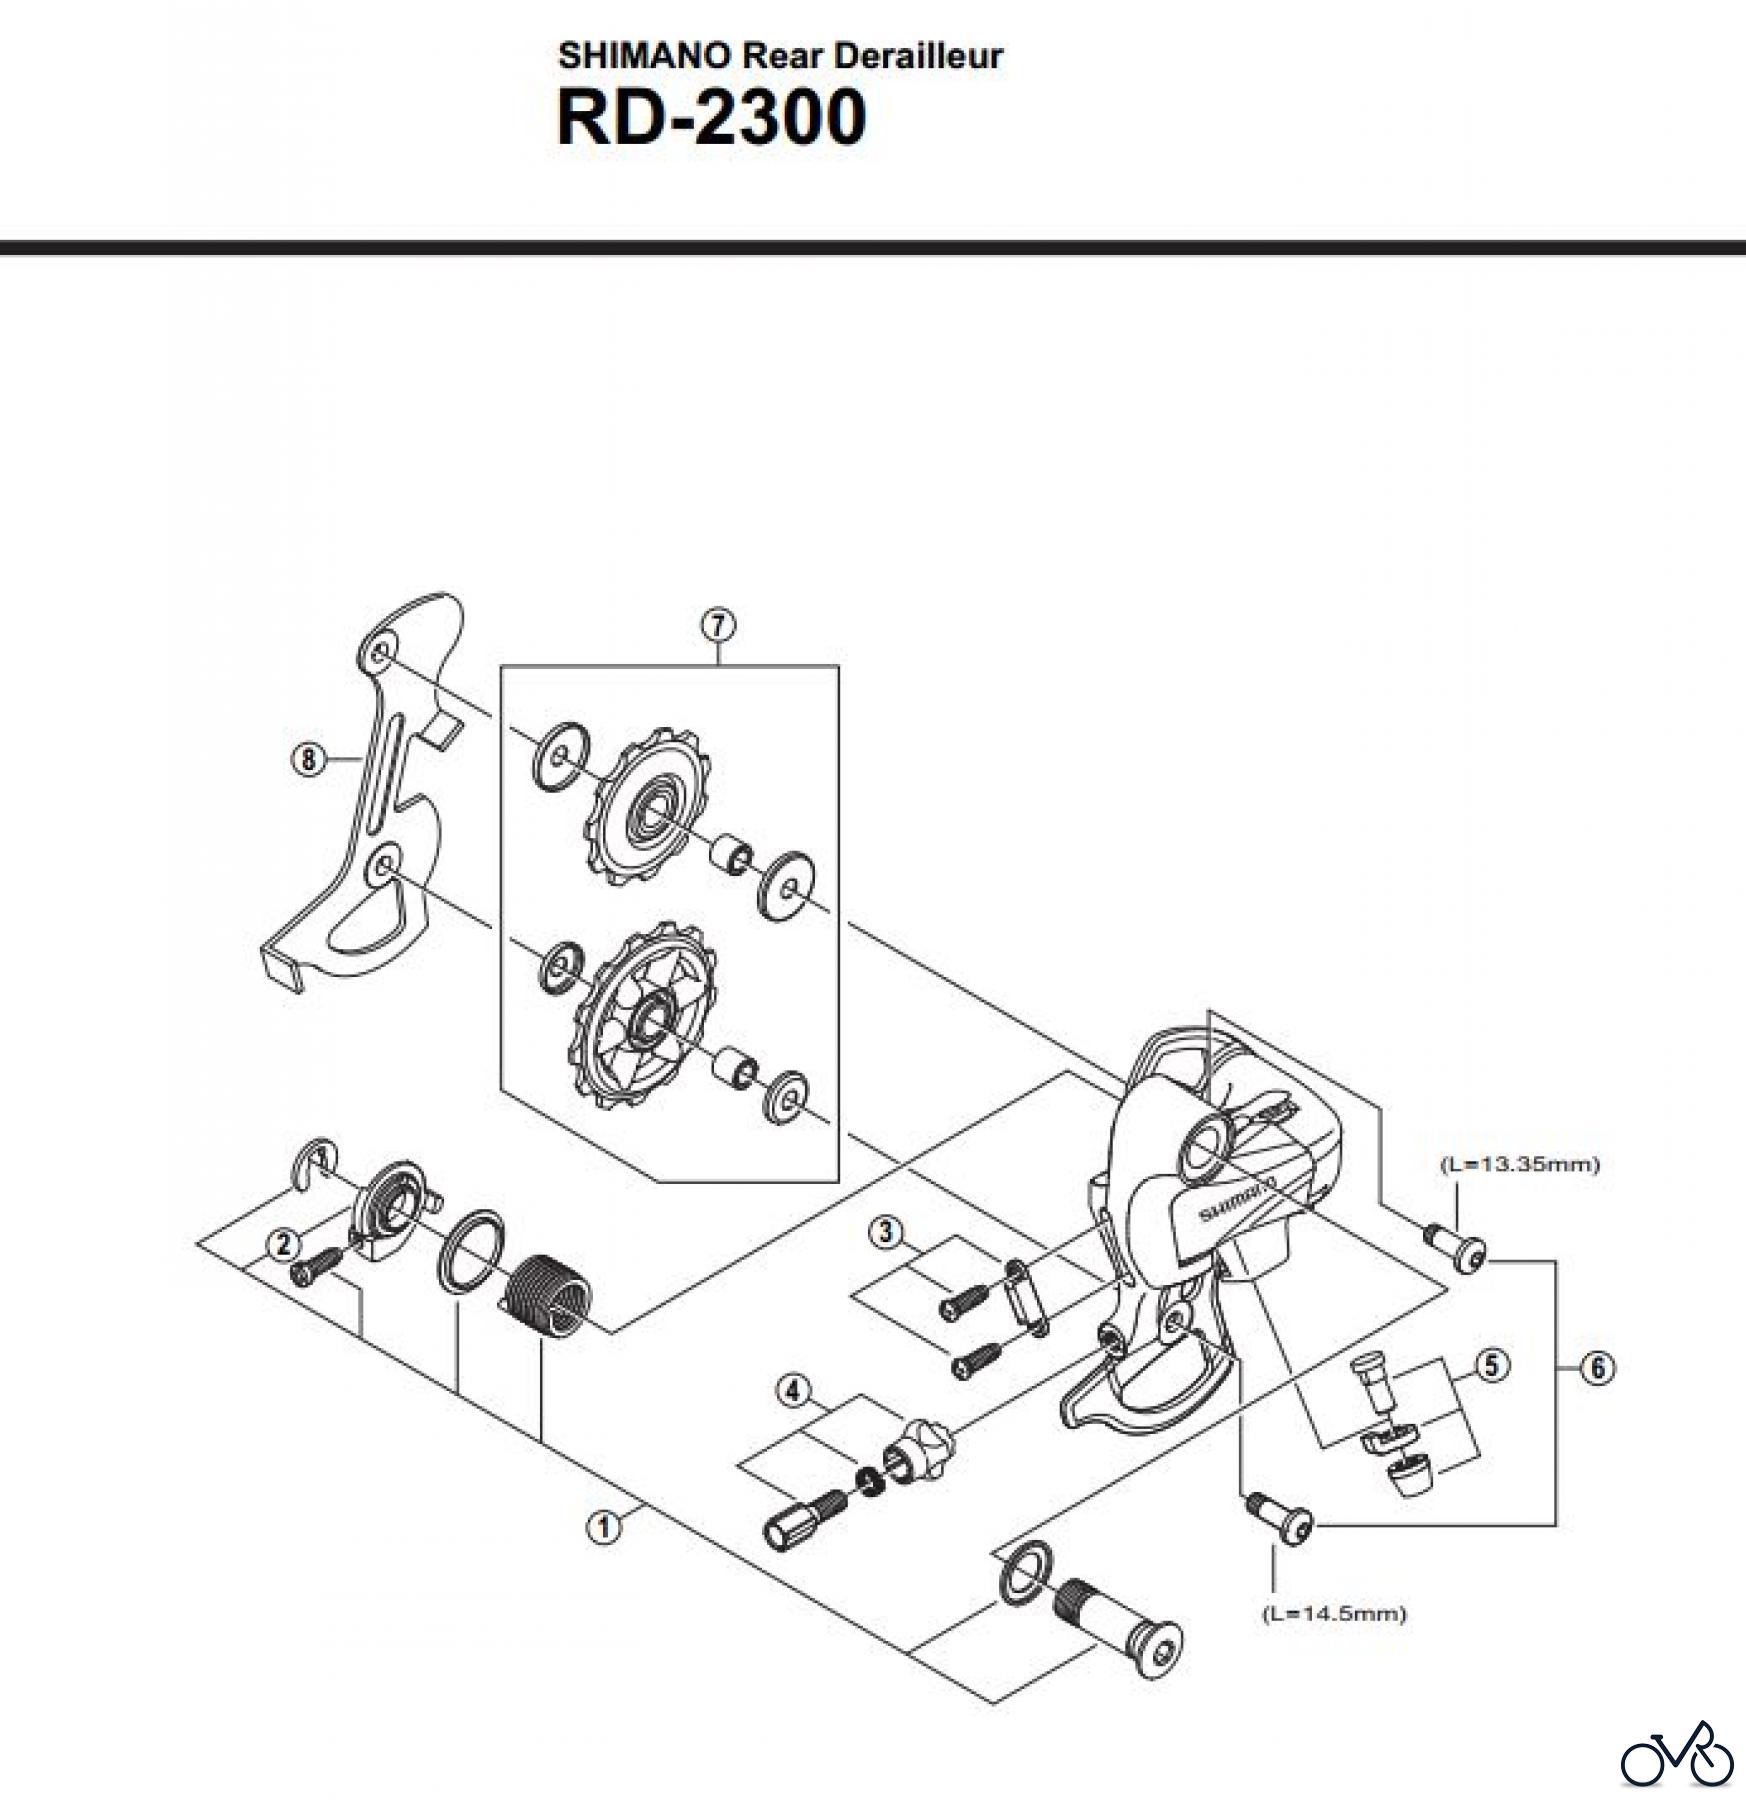  Shimano RD Rear Derailleur - Schaltwerk RD-2300-2923